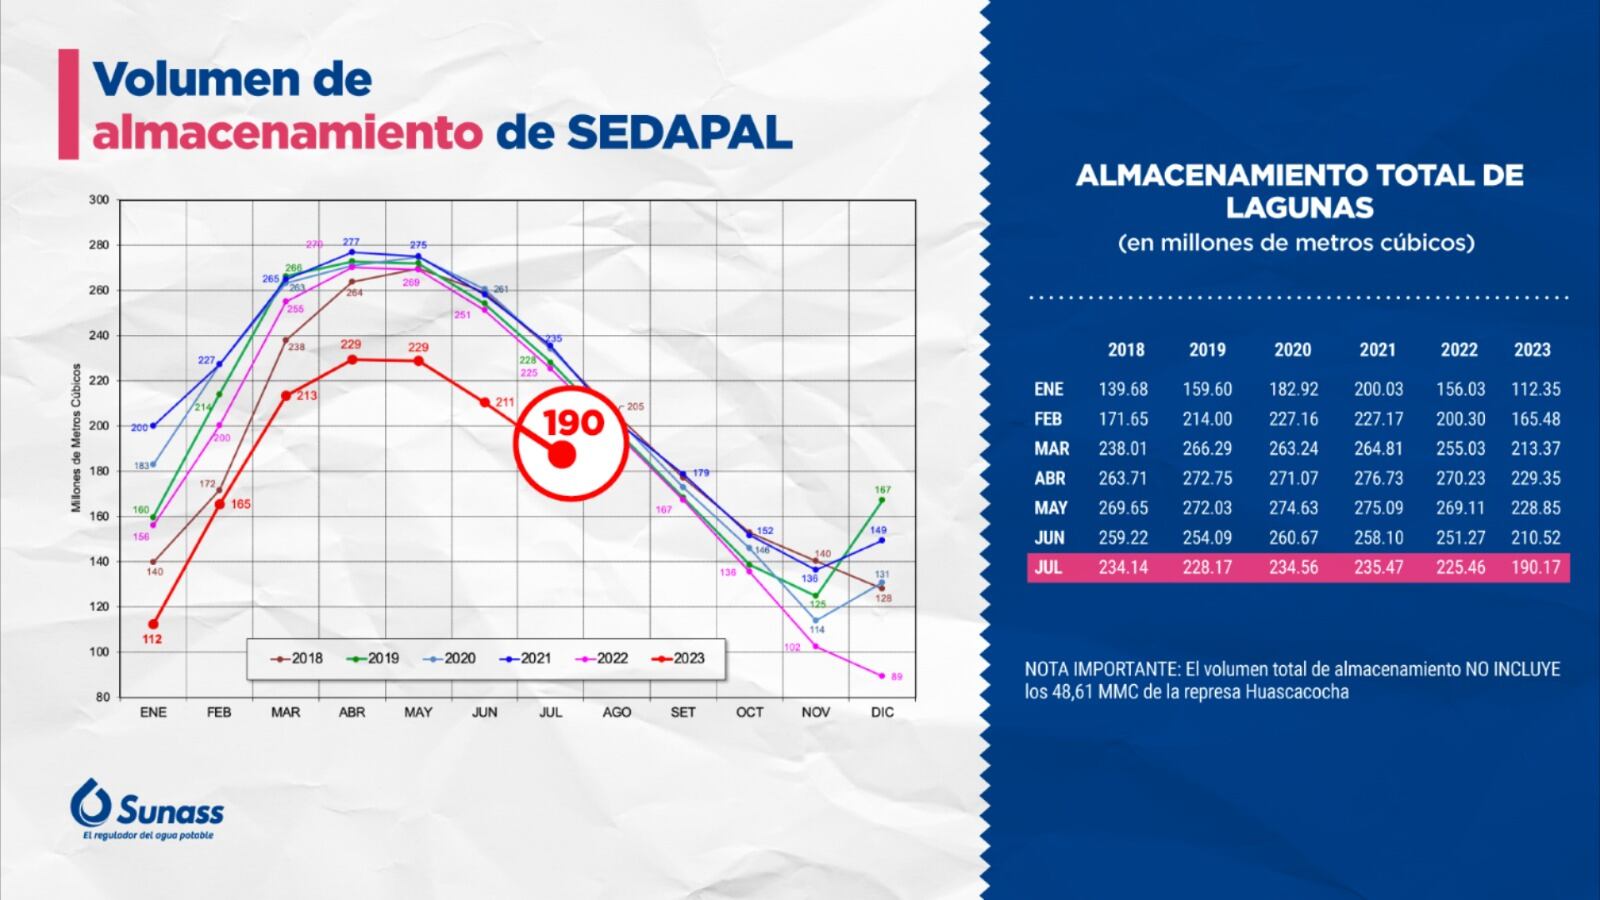 Histórico de almacenamiento de Sedapal en los últimos años muestra una clara disminución este 2023. Fuente: Sunass